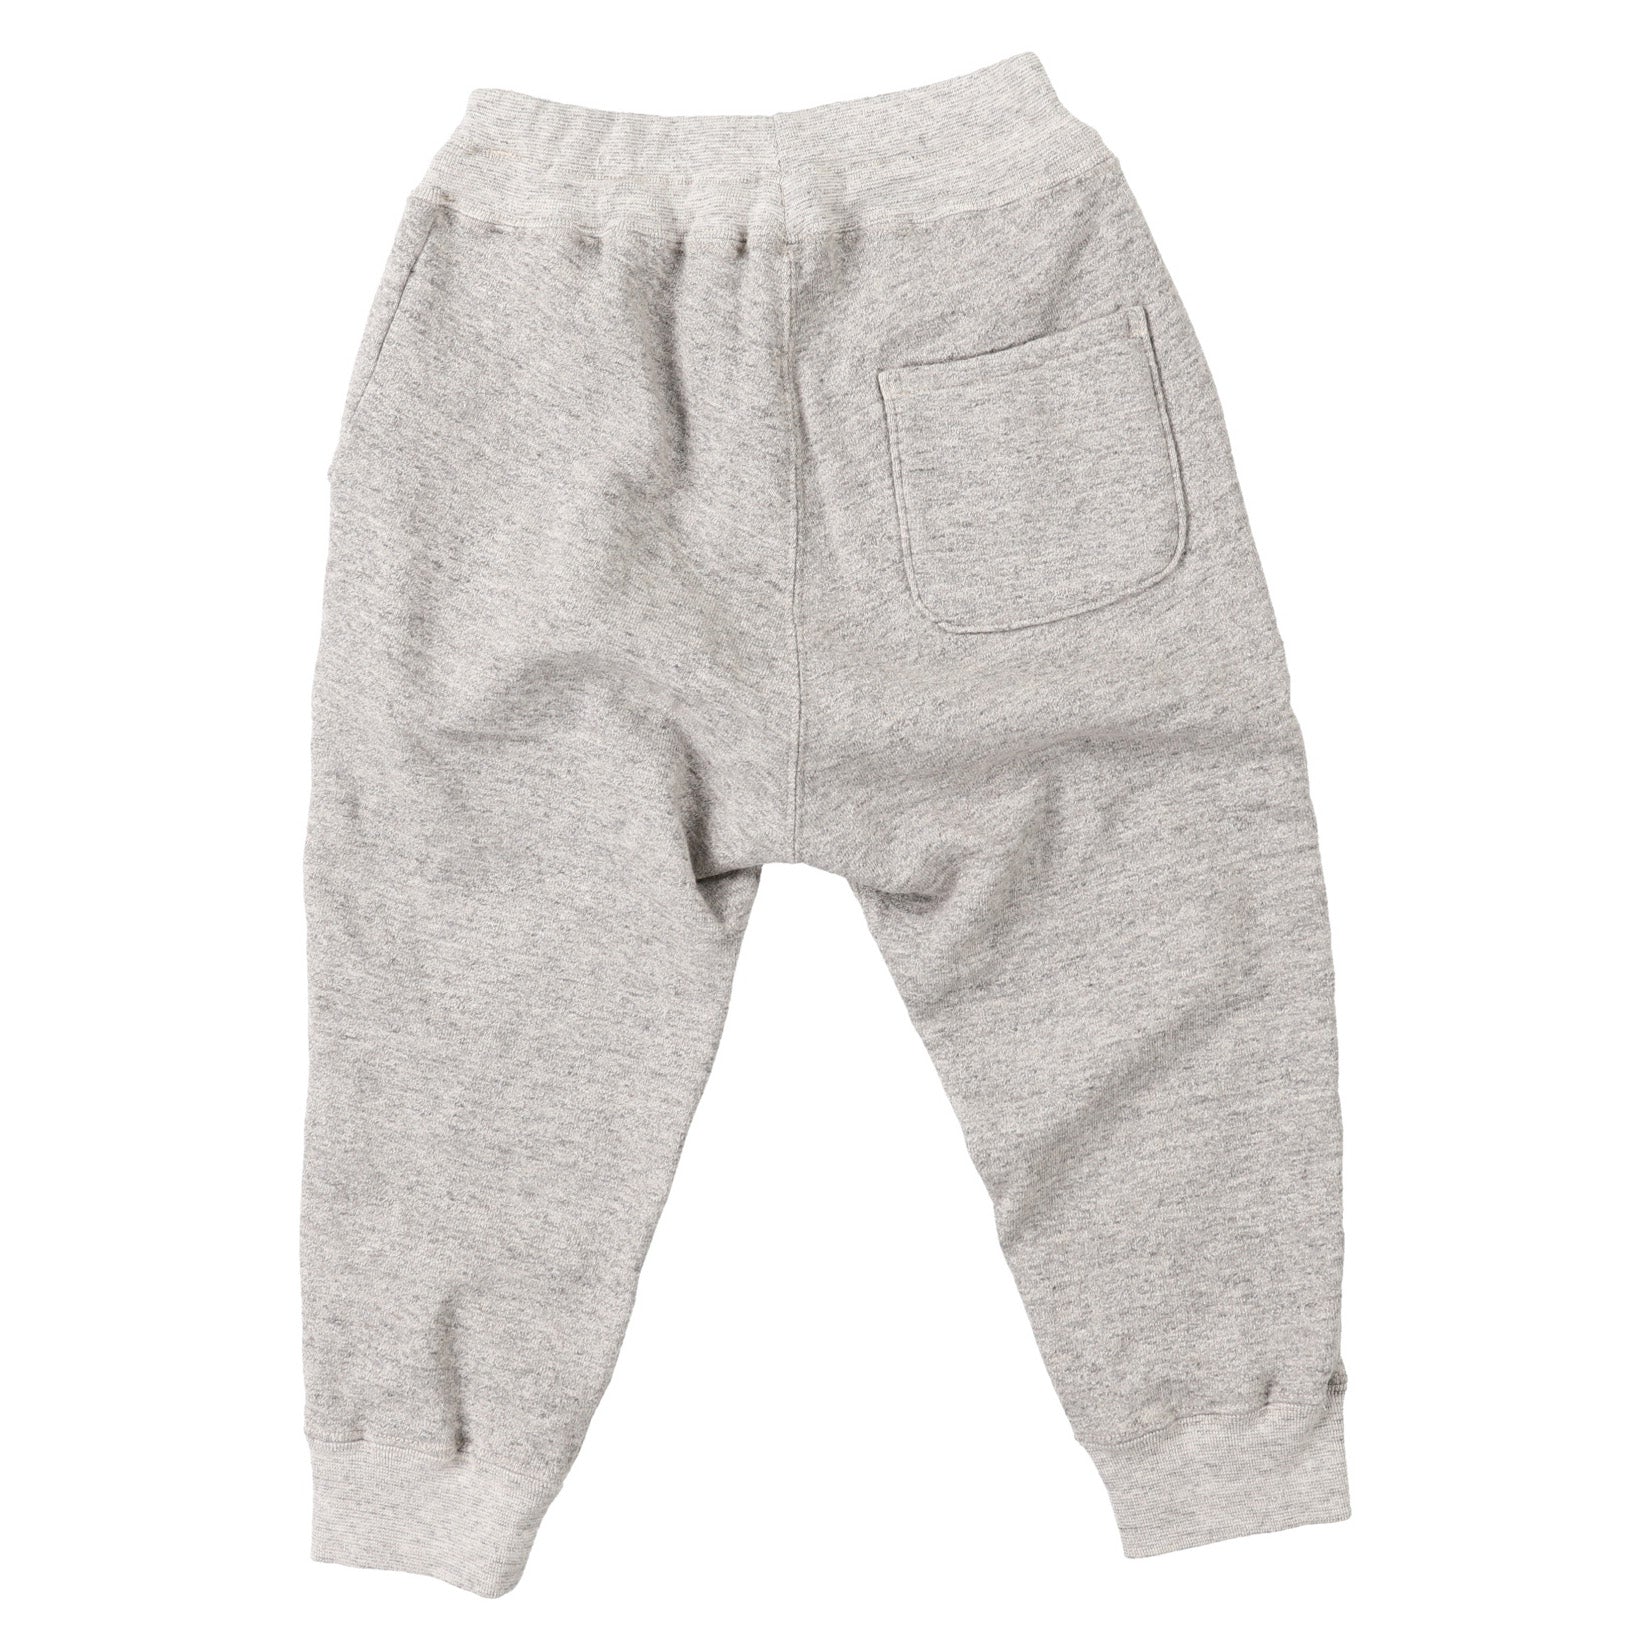 Boys Grey Logo Cotton Trousers